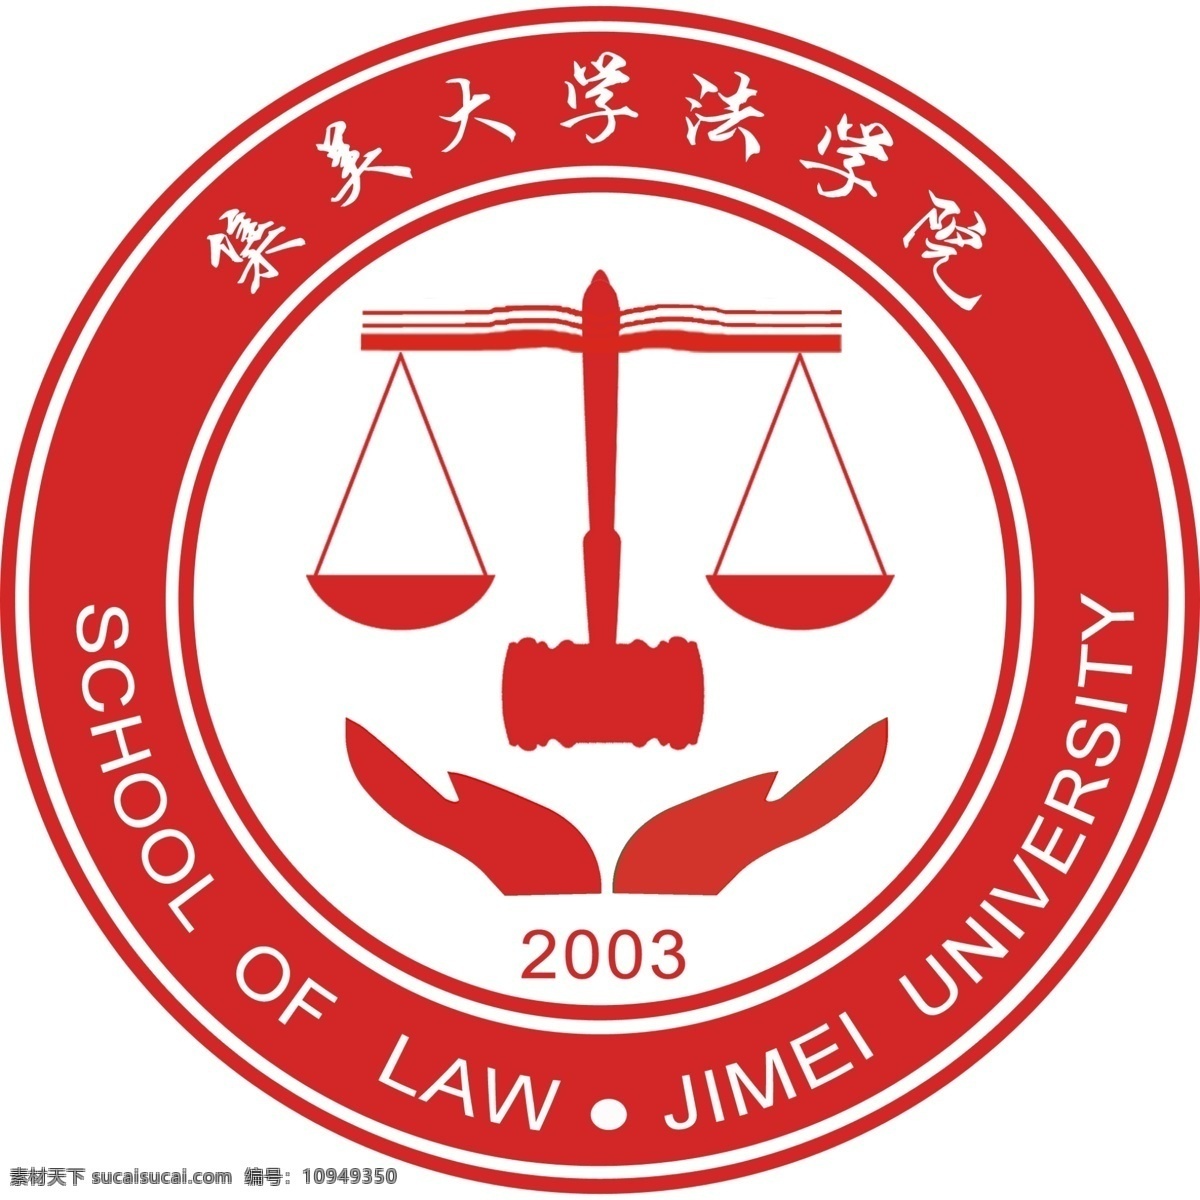 法学院 院 徽 天平 法学 院徽 psd源文件 logo设计